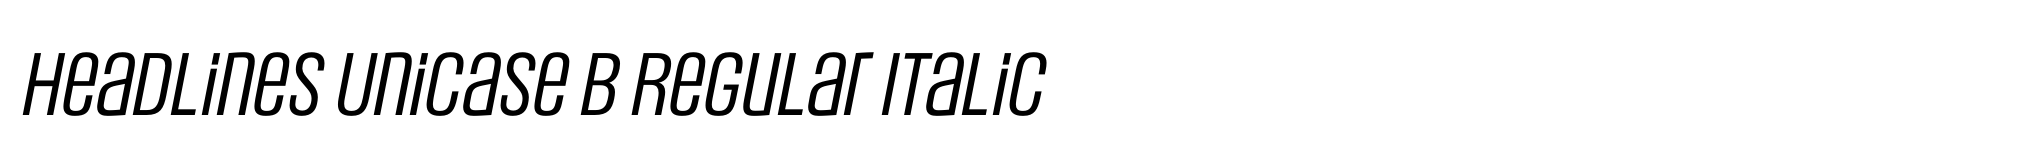 Headlines Unicase B Regular Italic image